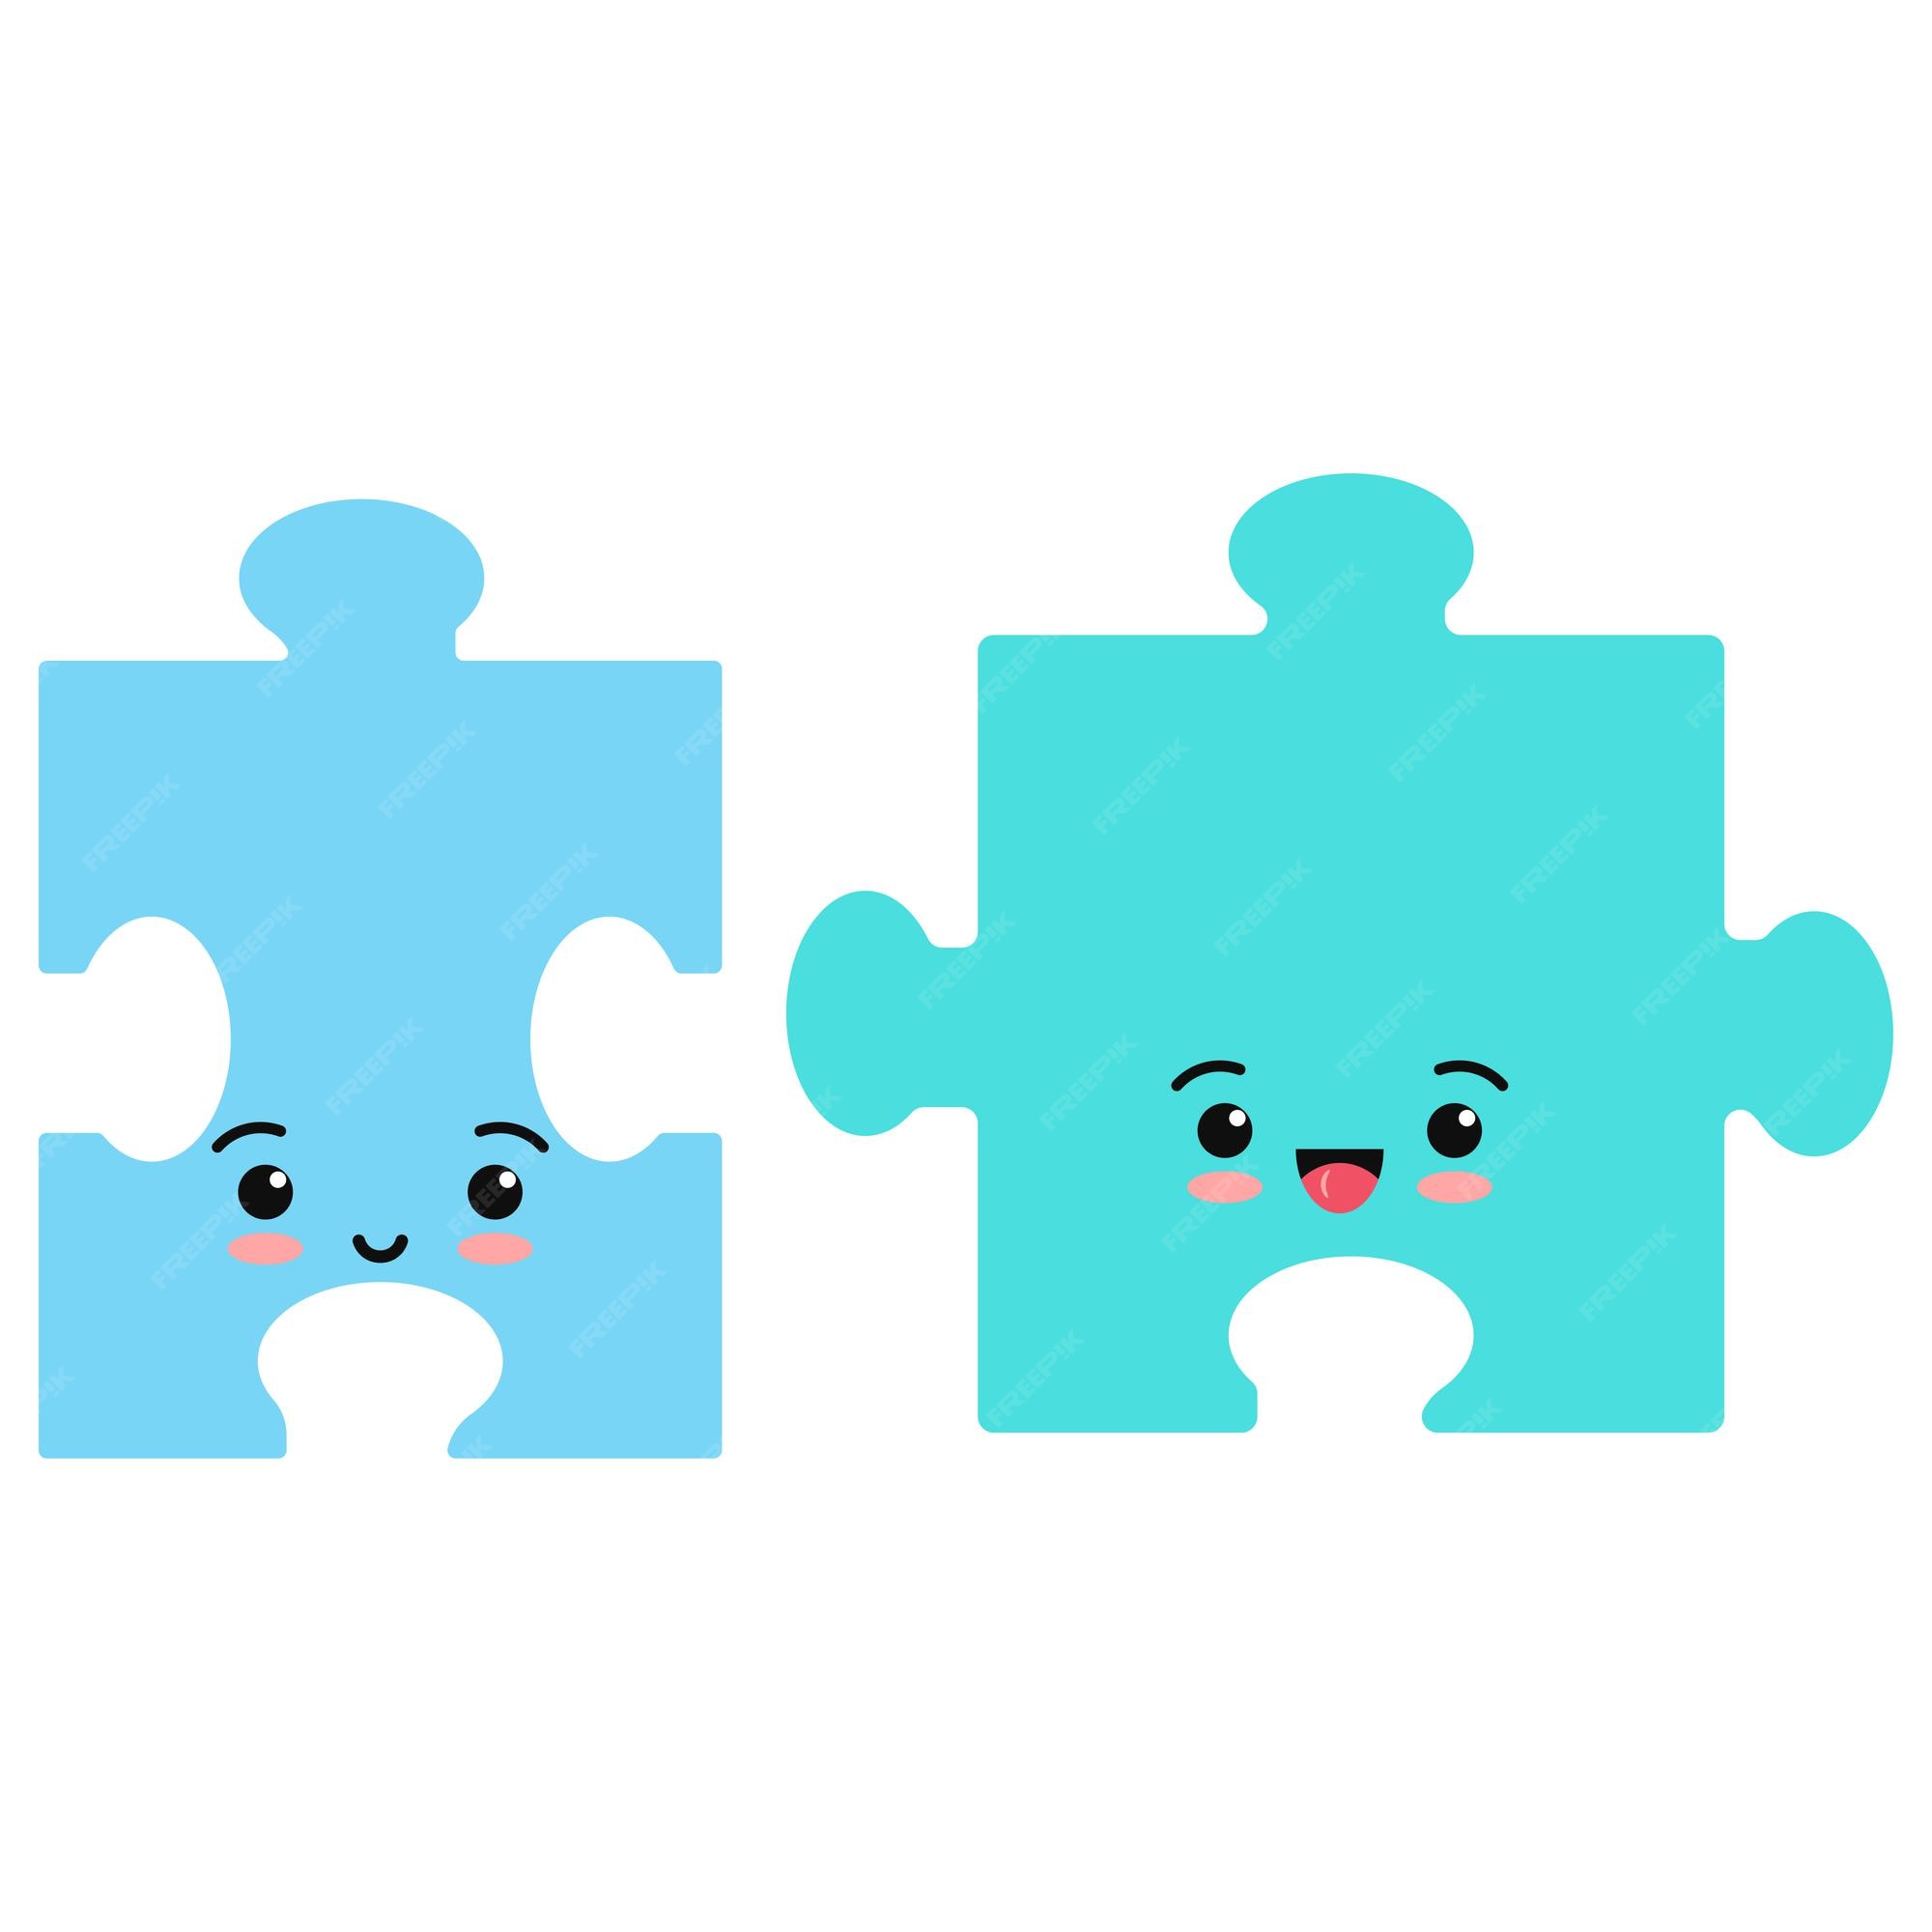 Icono de vector emoji de piezas de rompecabezas aislado sobre fondo blanco. mascota de estilo de dibujos animados kawaii sonriendo ilustración de rompecabezas. conjunto de personajes de emoticonos lindos de diseño